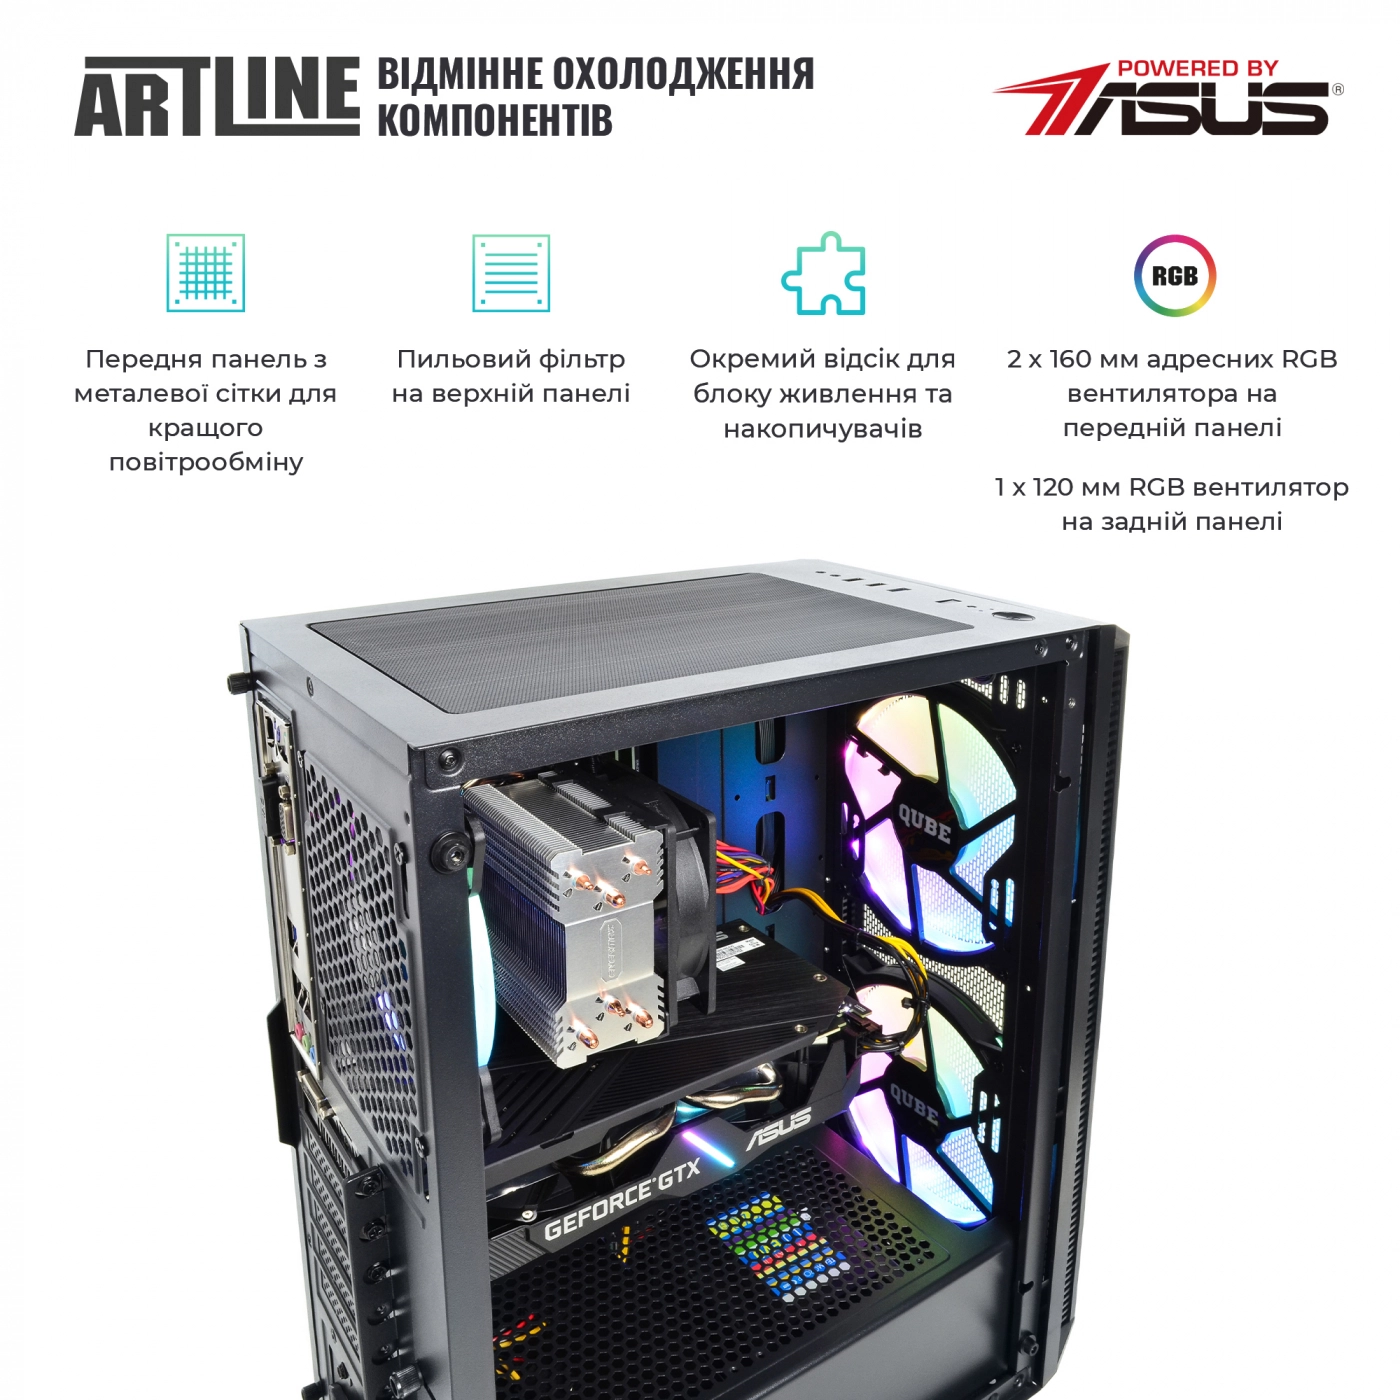 Купить Компьютер ARTLINE Gaming X65v27 - фото 2